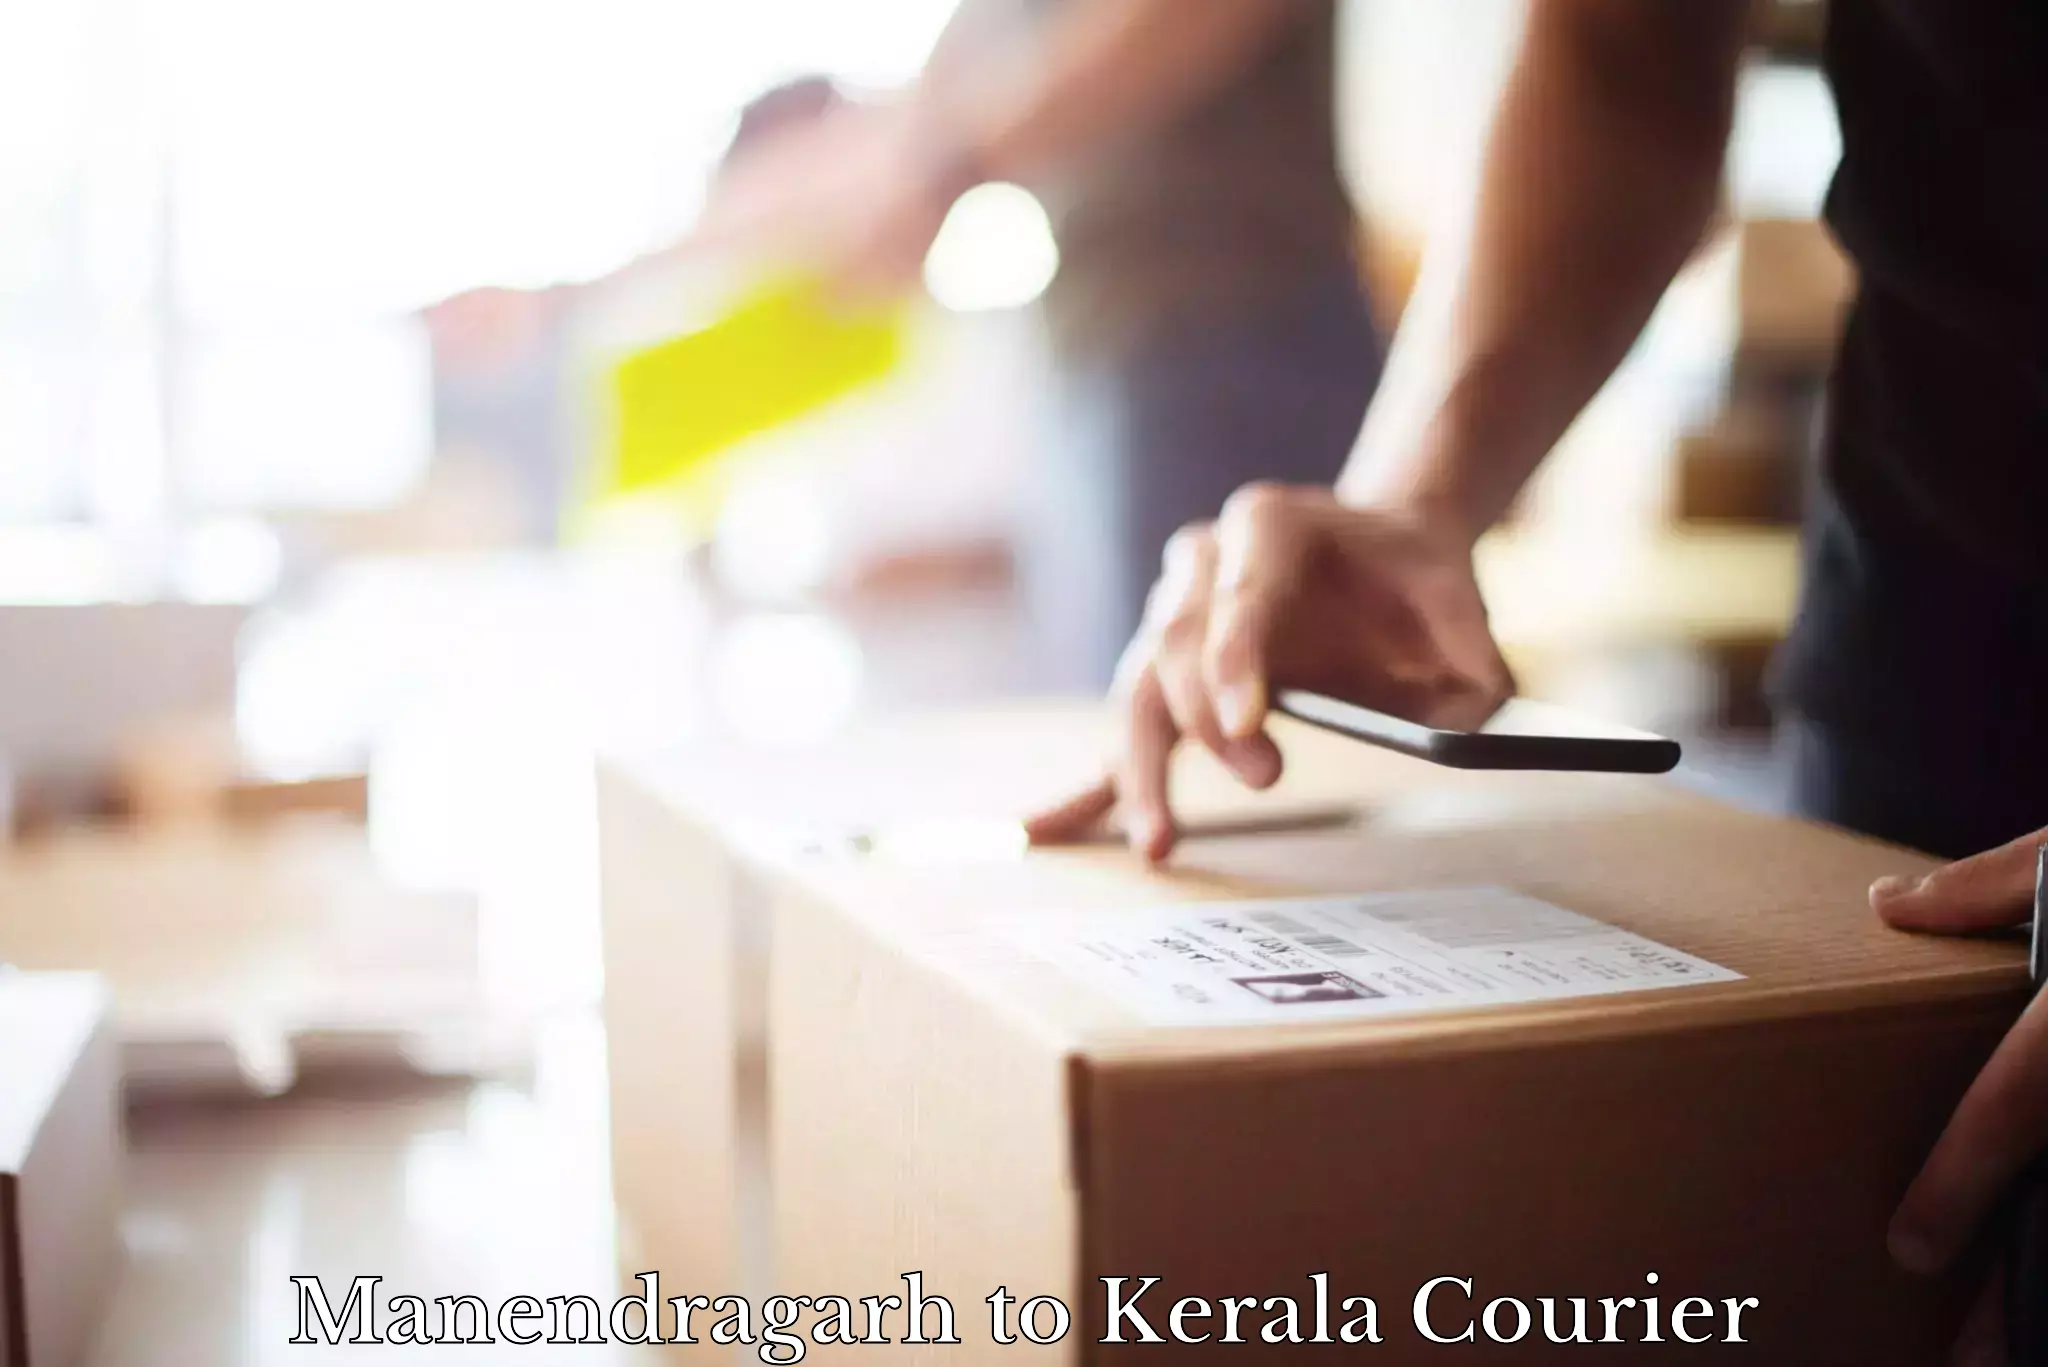 Individual parcel service Manendragarh to Cochin Port Kochi